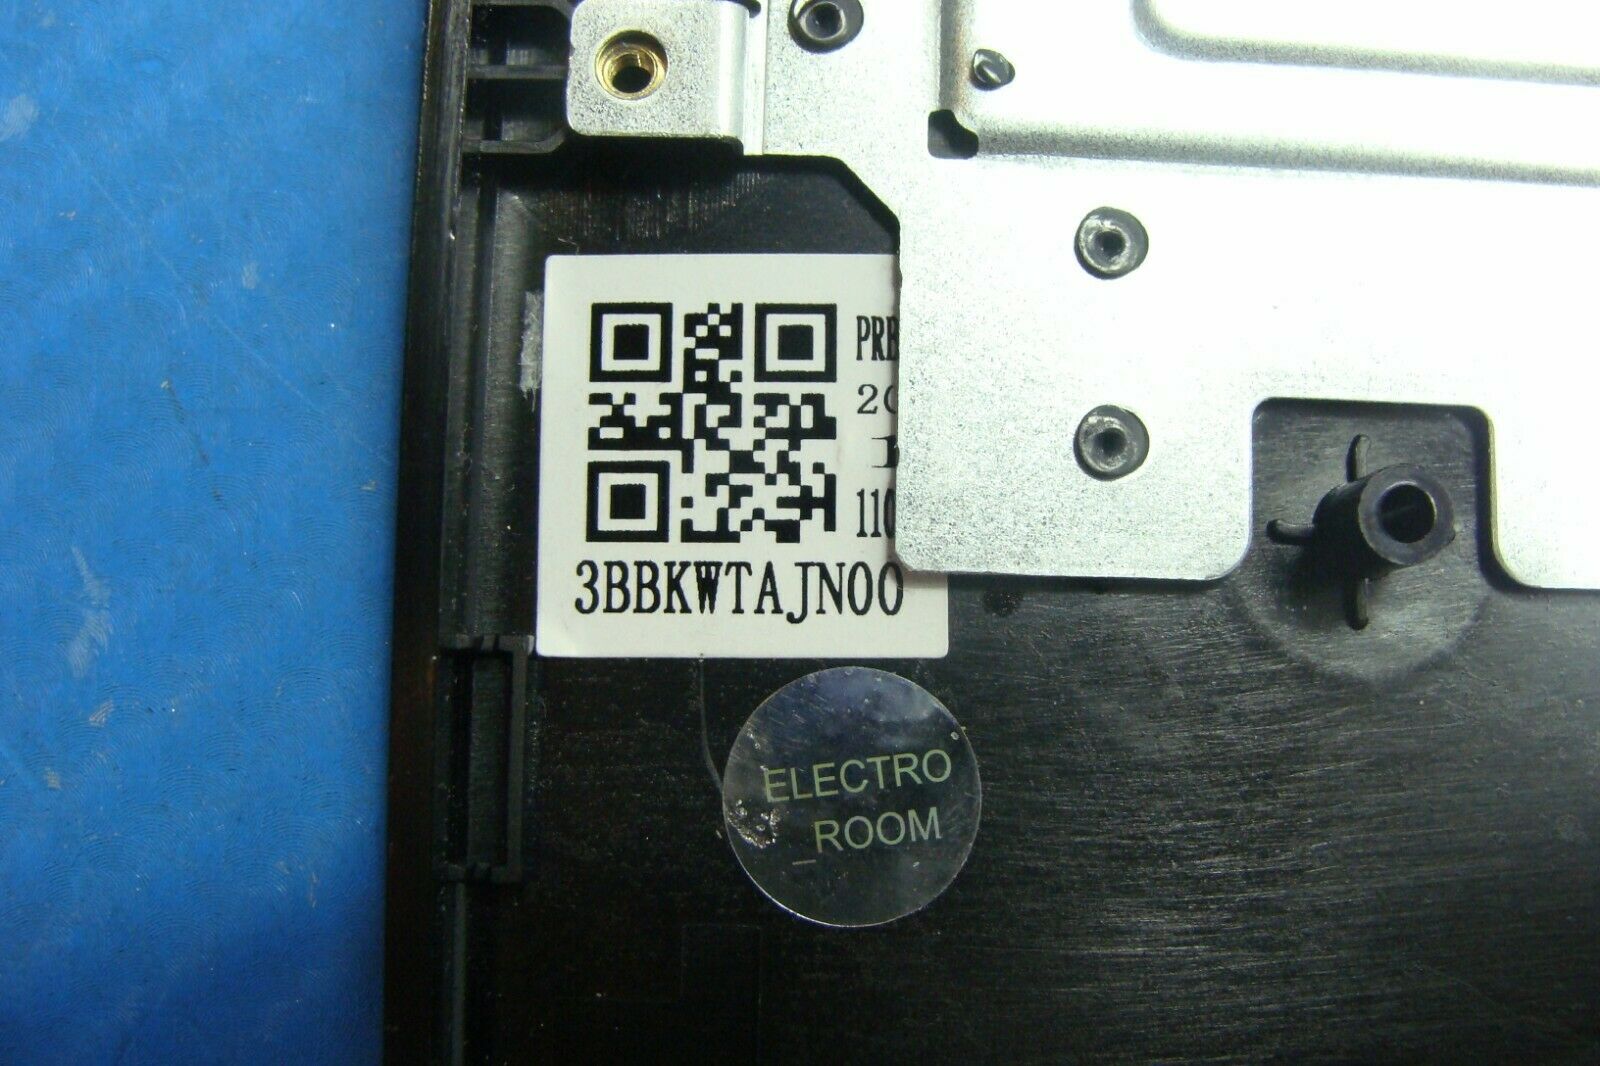 Asus Vivobook E410MA-211.TBSB 14